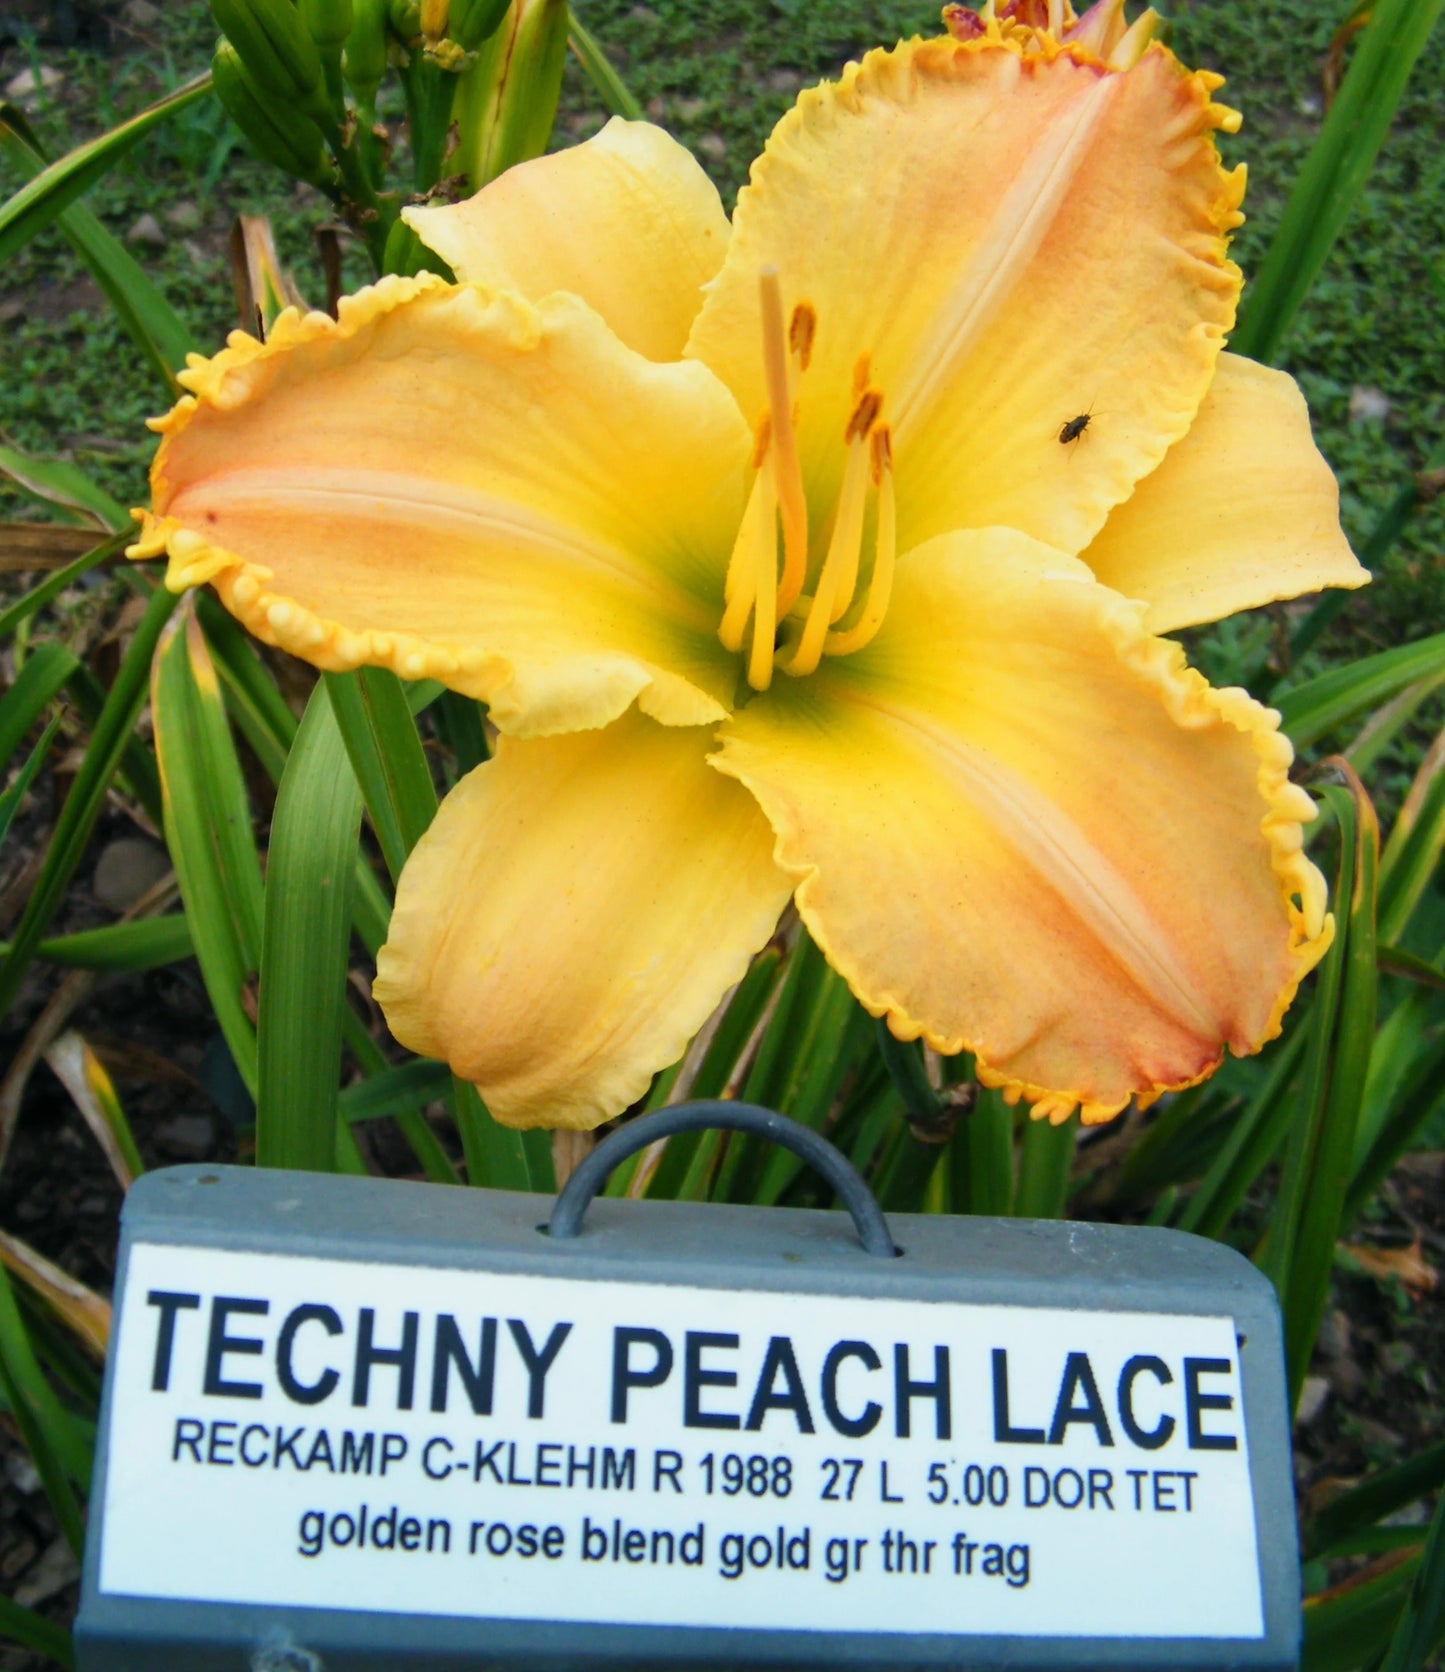 TECHNY PEACH LACE